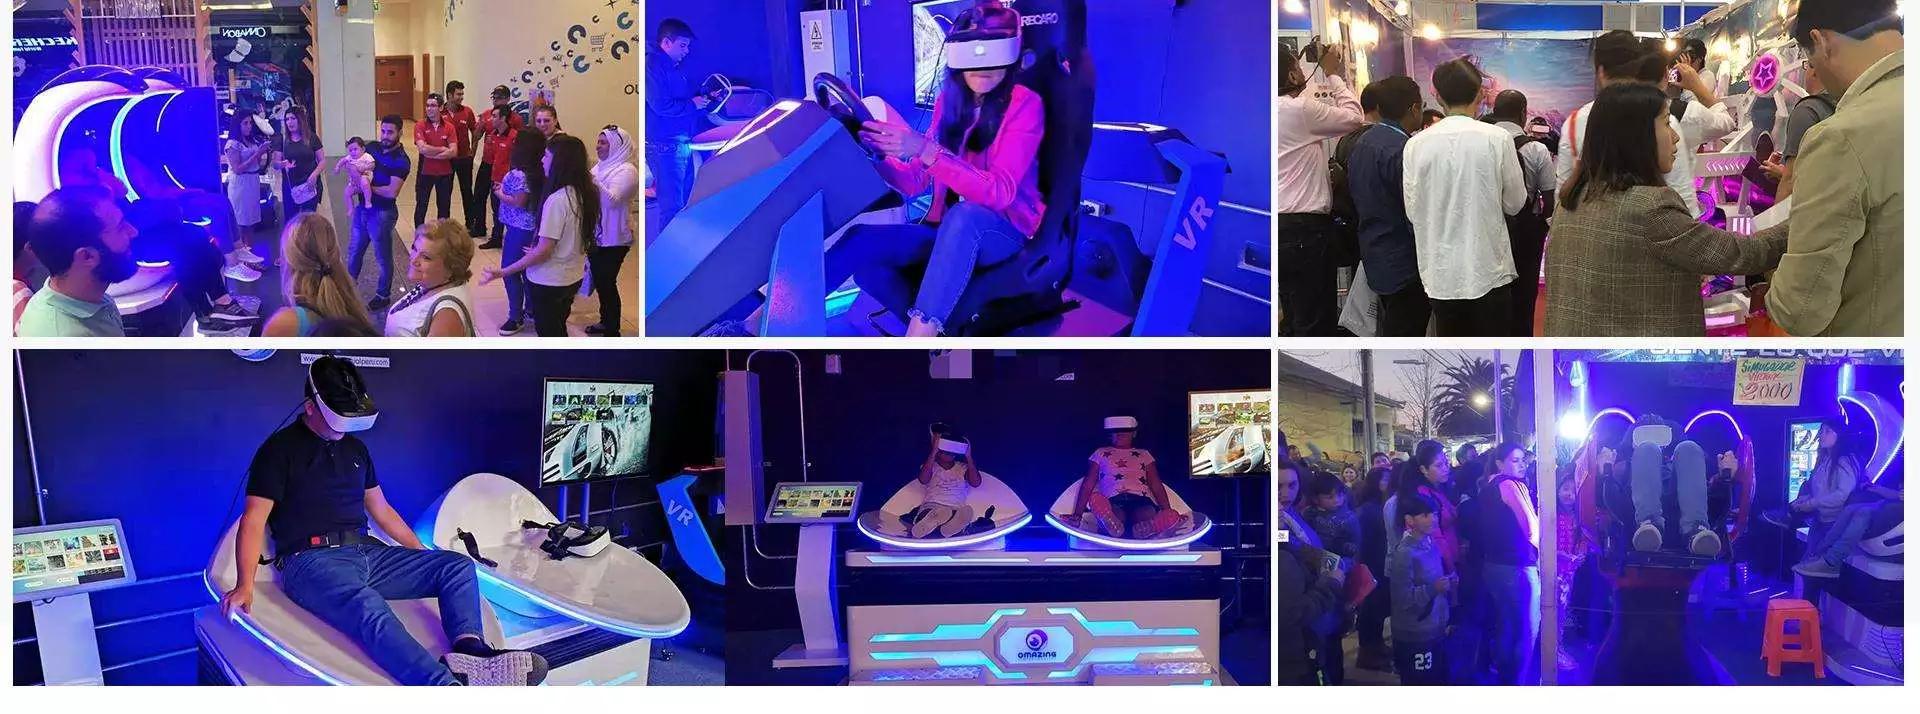 Magic Space Carnival Games 9D VR Ride 360 Atracciones de realidad virtual para ganar dinero empresarial